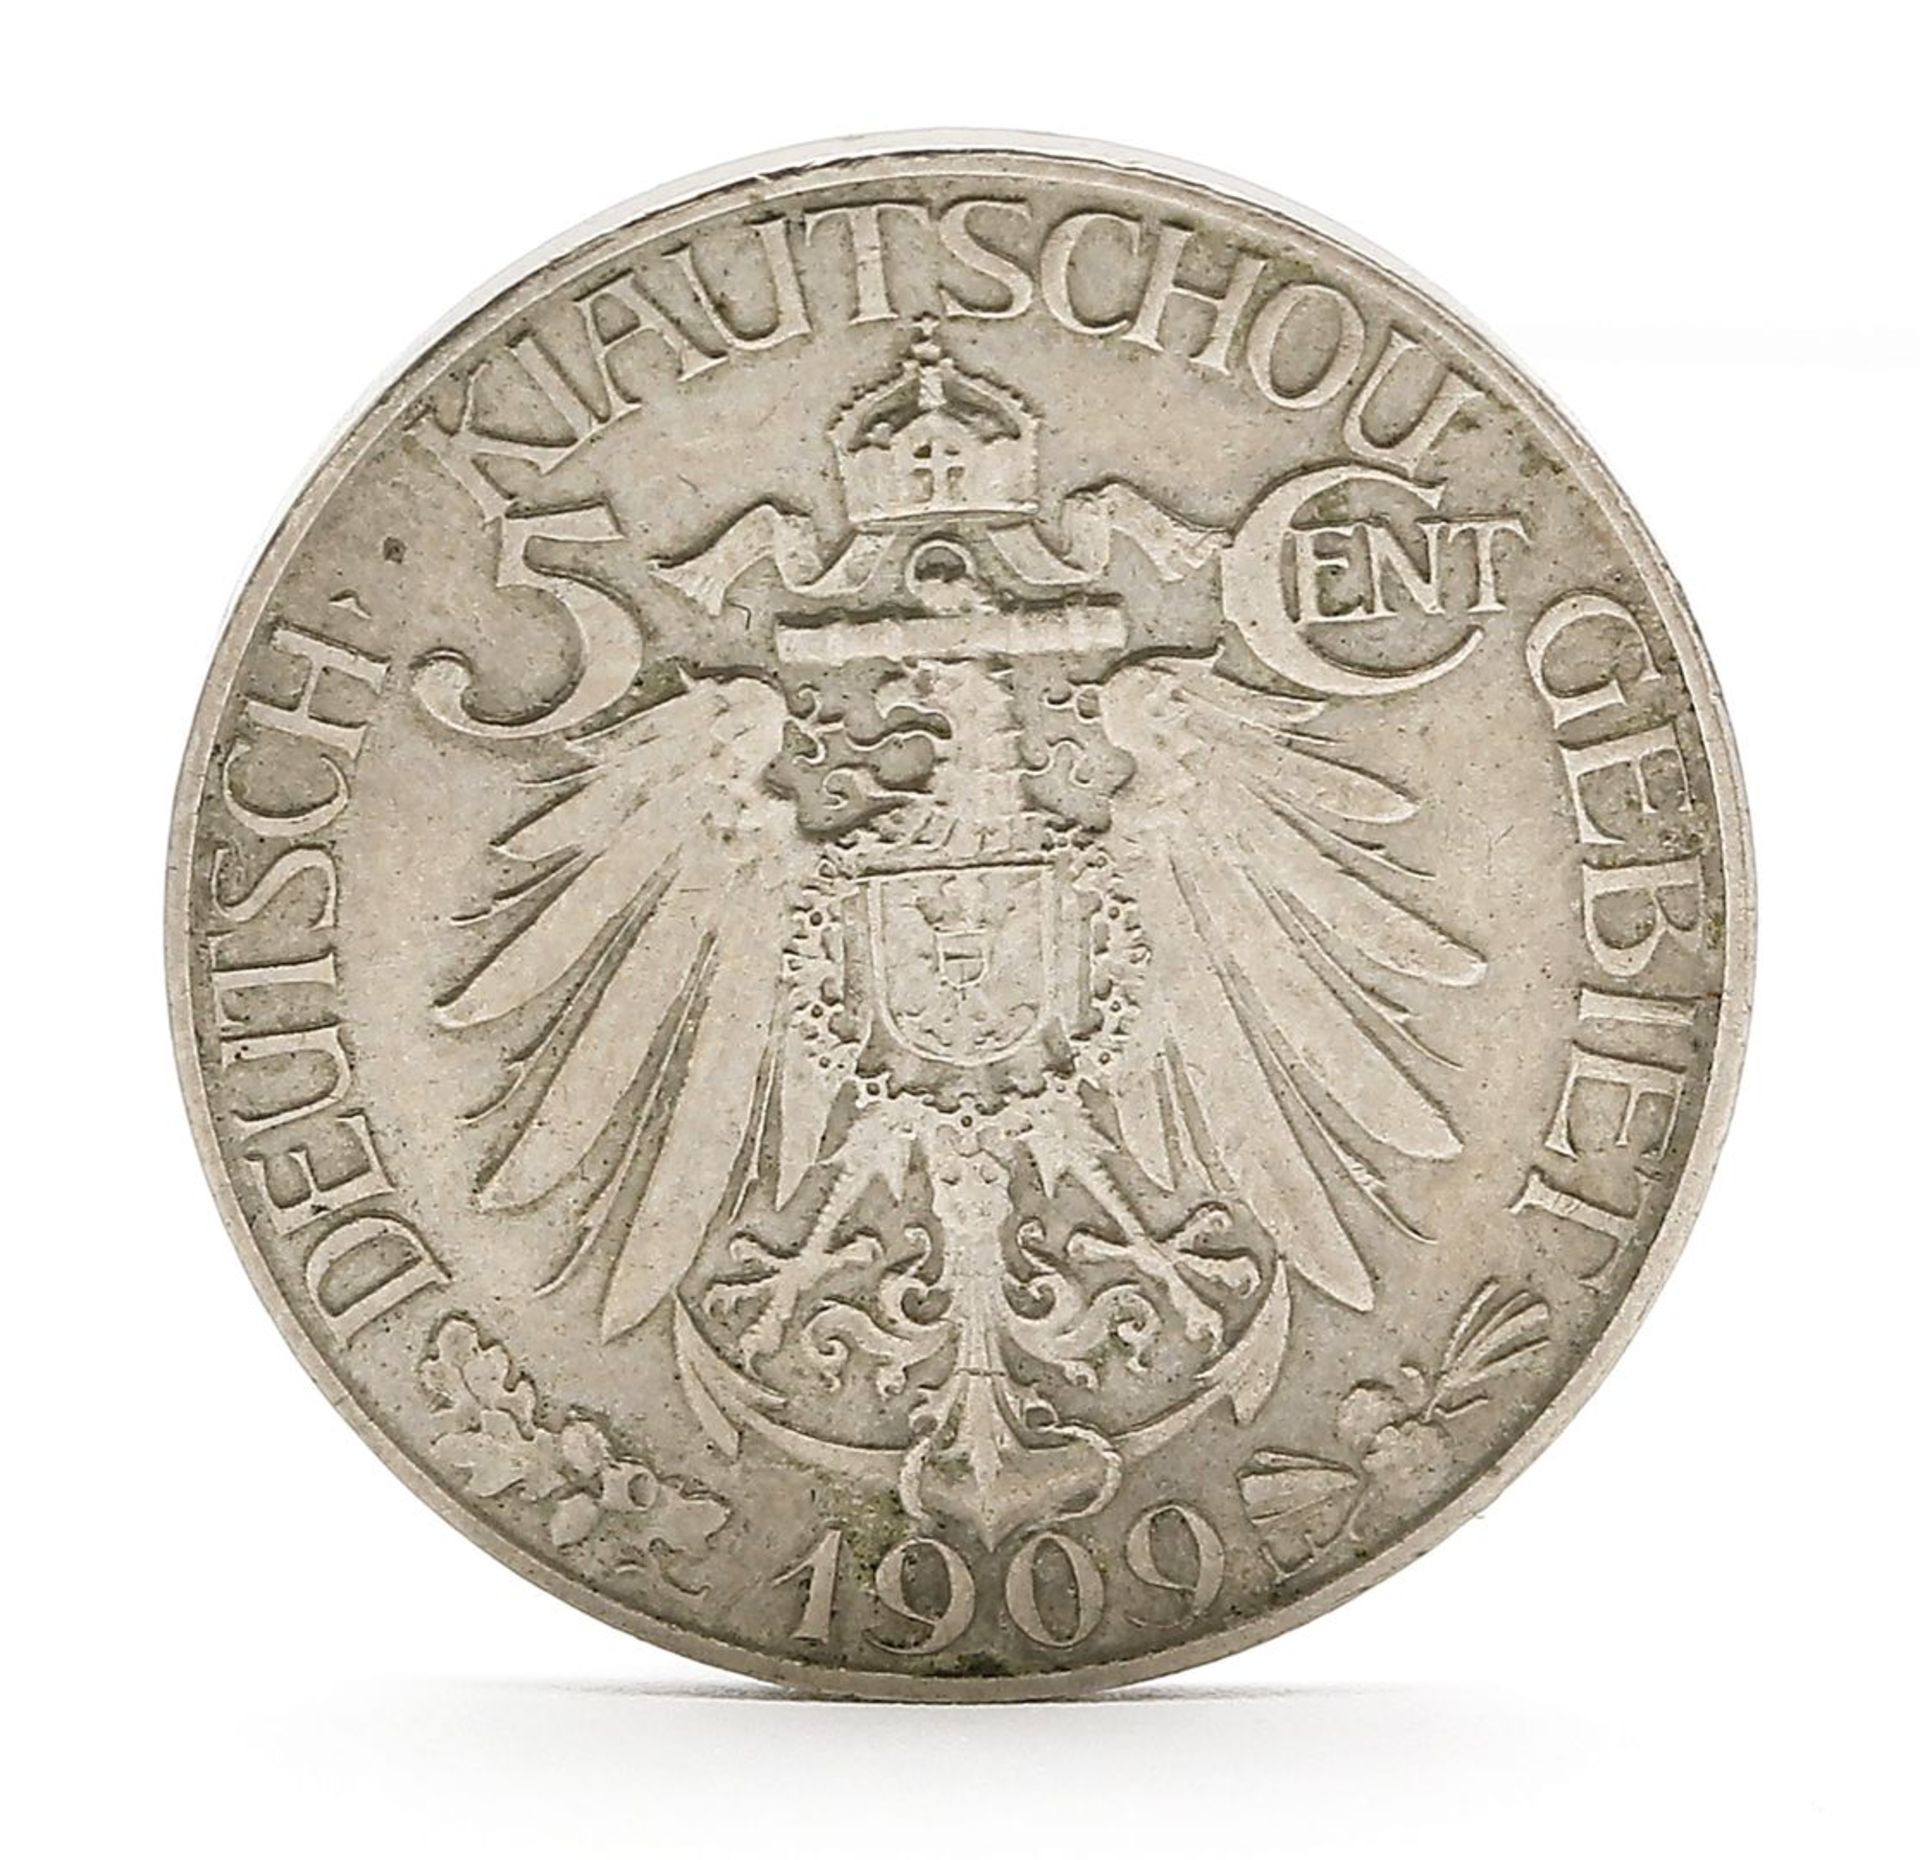 Chinesische Münze "5 Cent Kiautschu", Deutsche Kolonien.